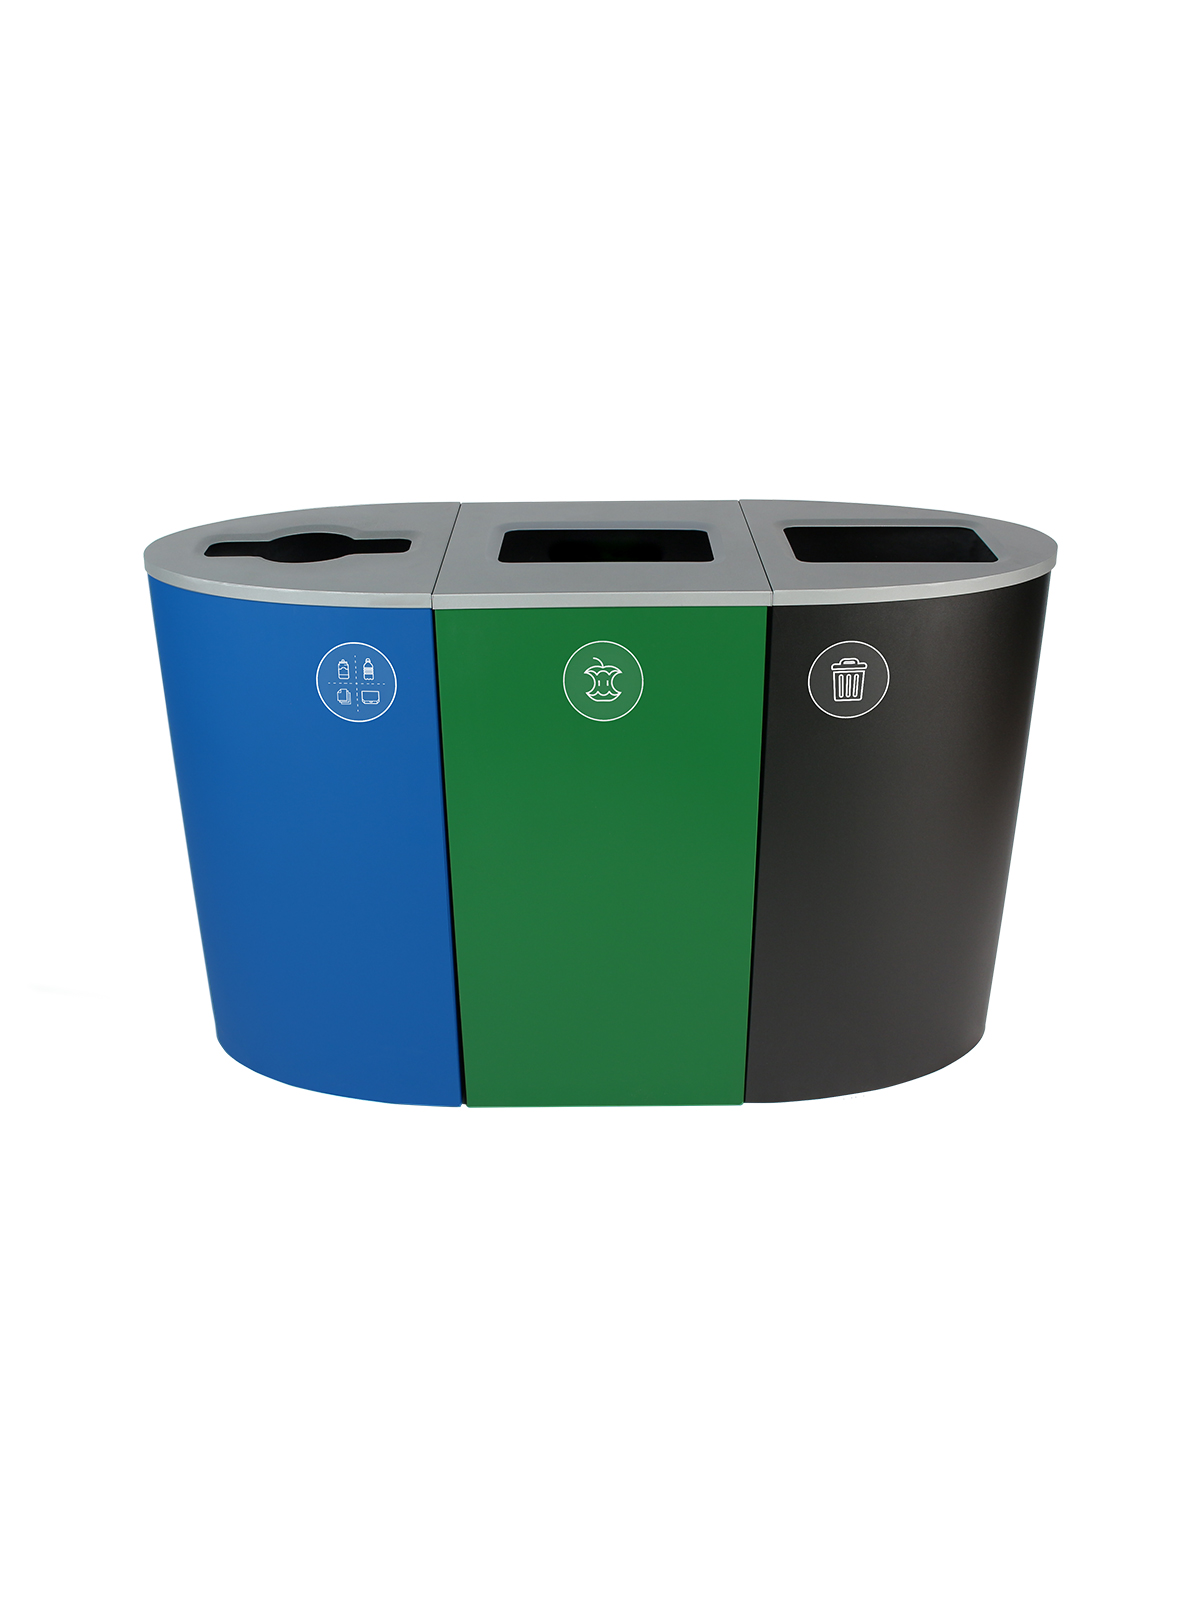 光谱-三重-华盛顿特区符合-混合可回收物-堆肥垃圾-混合全-蓝-绿-黑